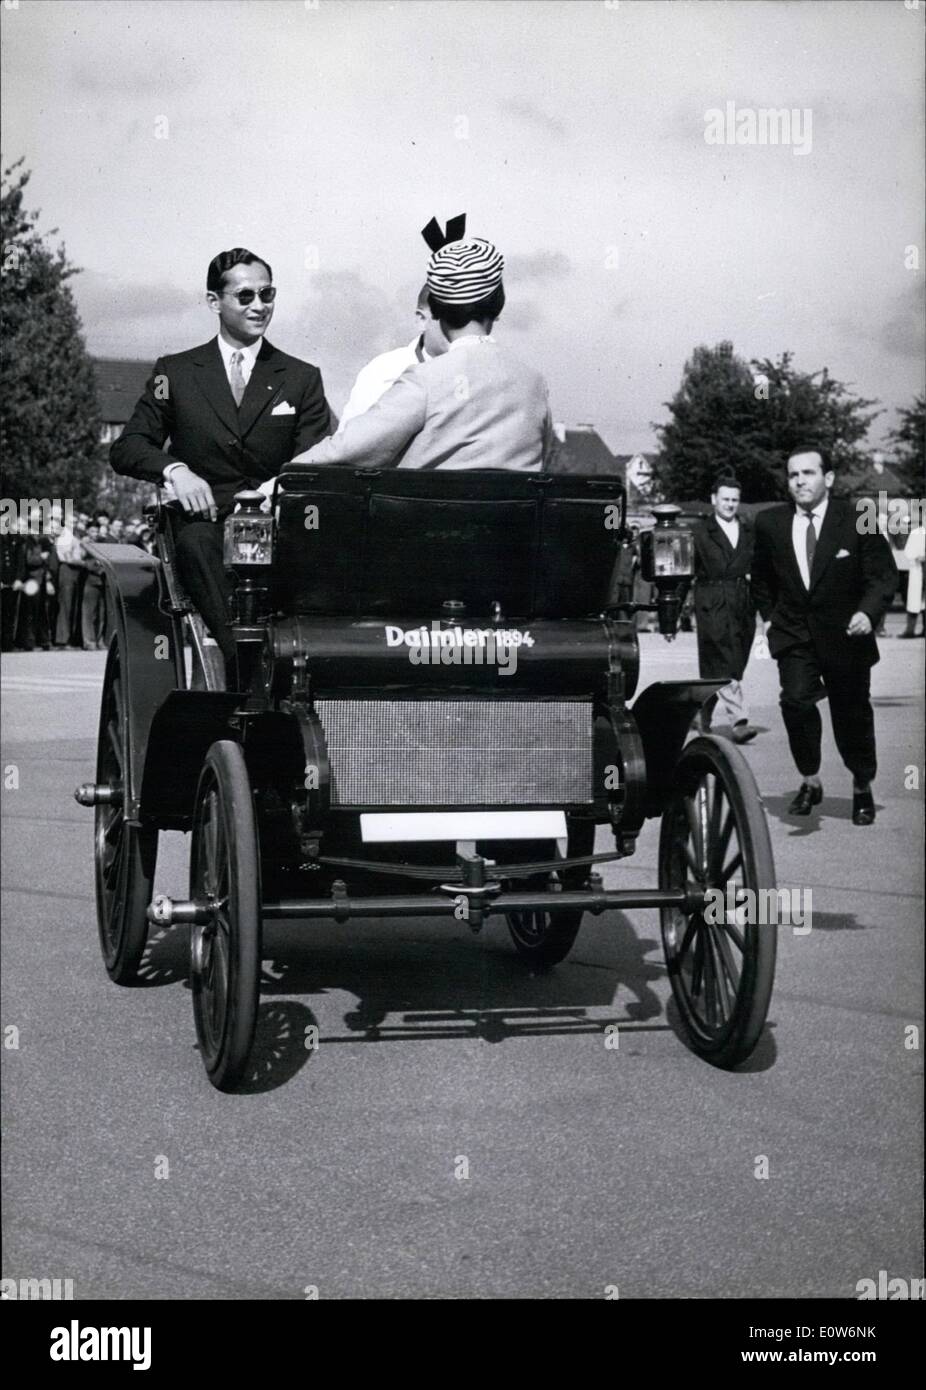 08 août 1961 - une vitesse inattendue ; développé toi vieille voiture Daimler Benz de 1894 avec le roi et la reine de Thaïlande à bord. Pour la fonction inattendue policier qui avait l'ordre trop l'oeil sur la sécurité de la reine Sirikit et le roi Bhumibol, lorsqu'ils ont visité le musée de l'usine Mercedes-Benz de Stuttgart lors de leur visite en Allemagne. Le policier a dû donner ''full speed'' à ses pieds pour s'acquitter de son devoir. Banque D'Images